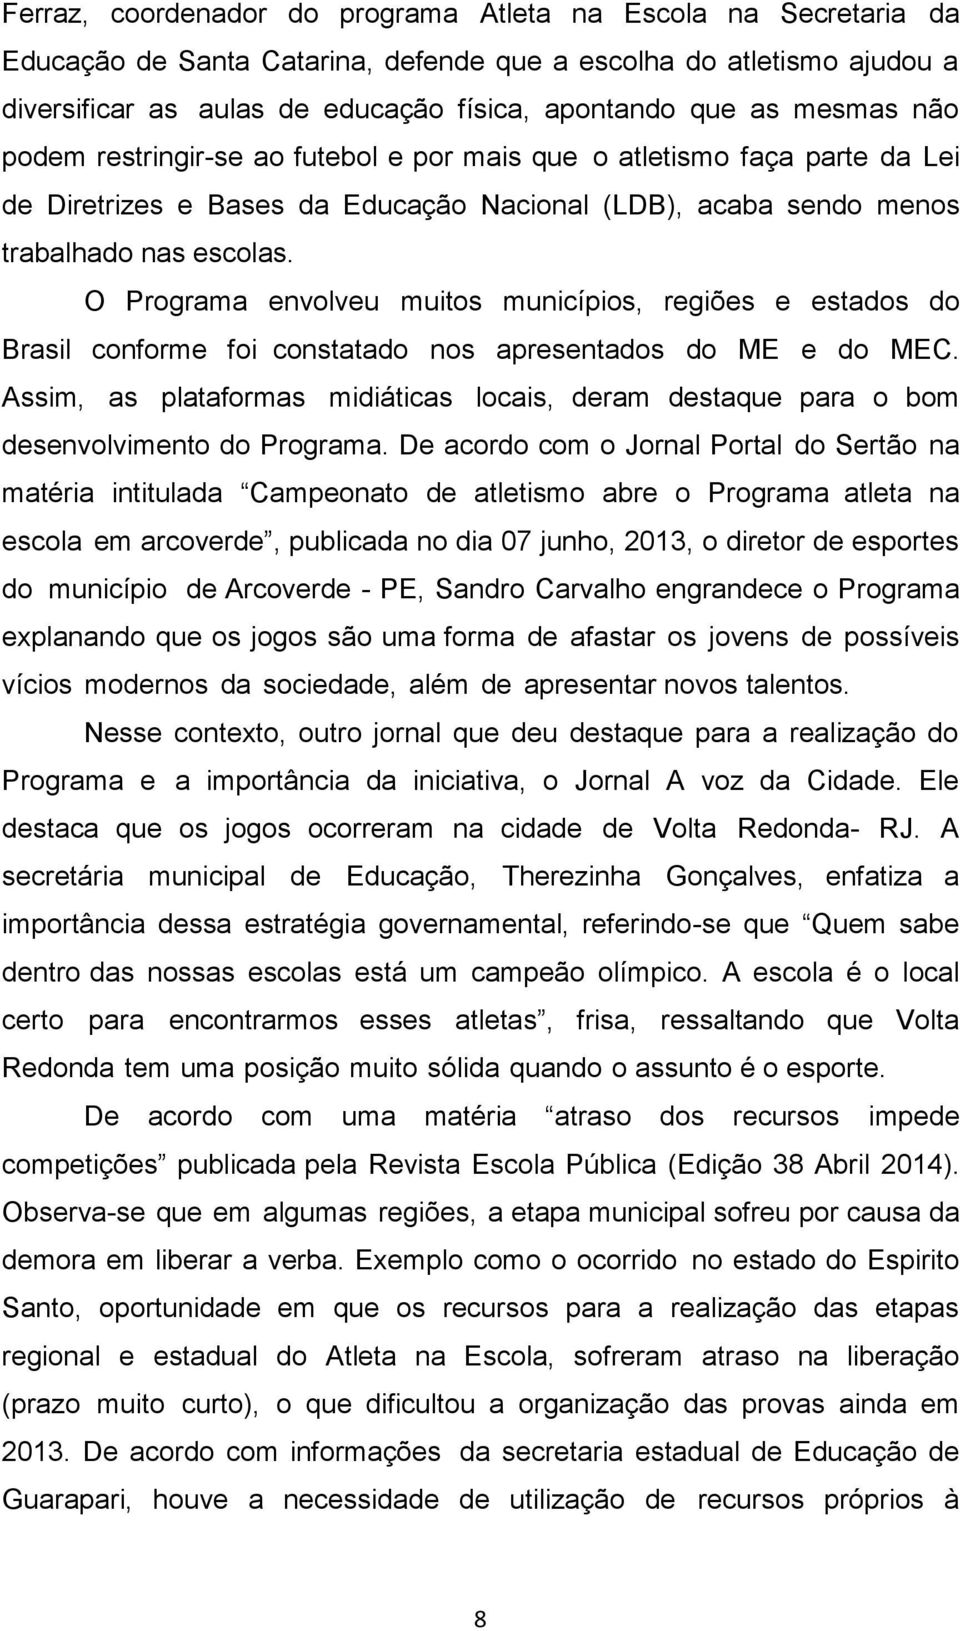 O Programa envolveu muitos municípios, regiões e estados do Brasil conforme foi constatado nos apresentados do ME e do MEC.